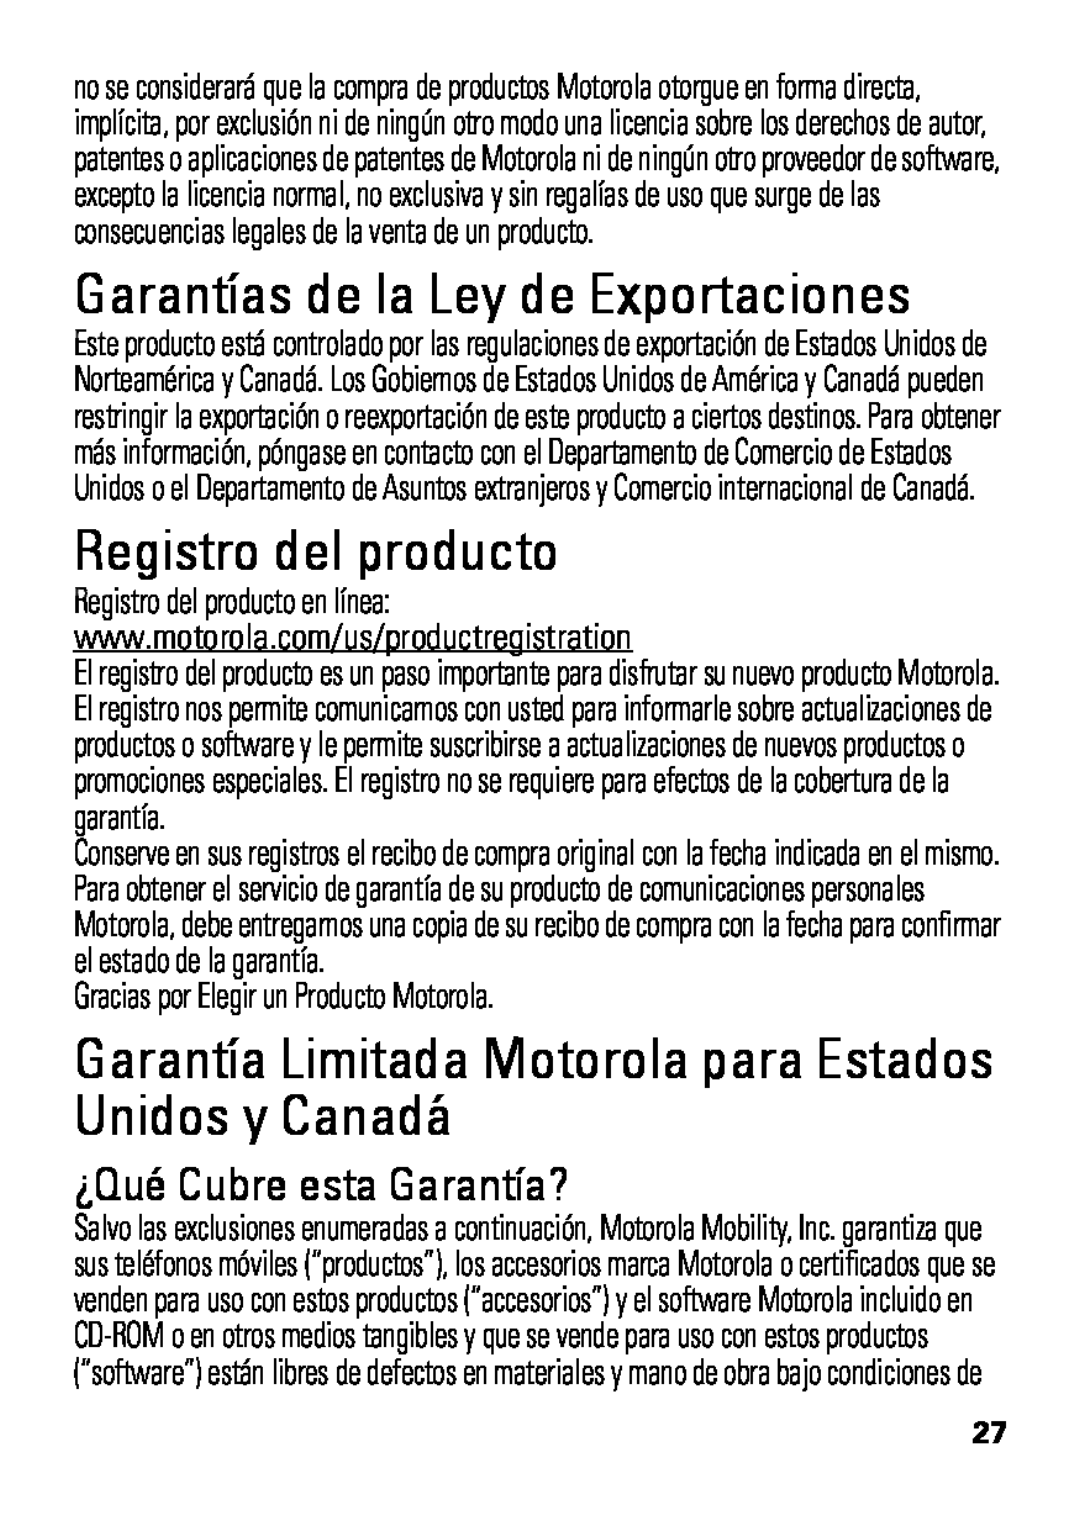 Motorola HX550 manual Garantías de la Ley de Exportaciones, Registro del producto, ¿Qué Cubre esta Garantía? 